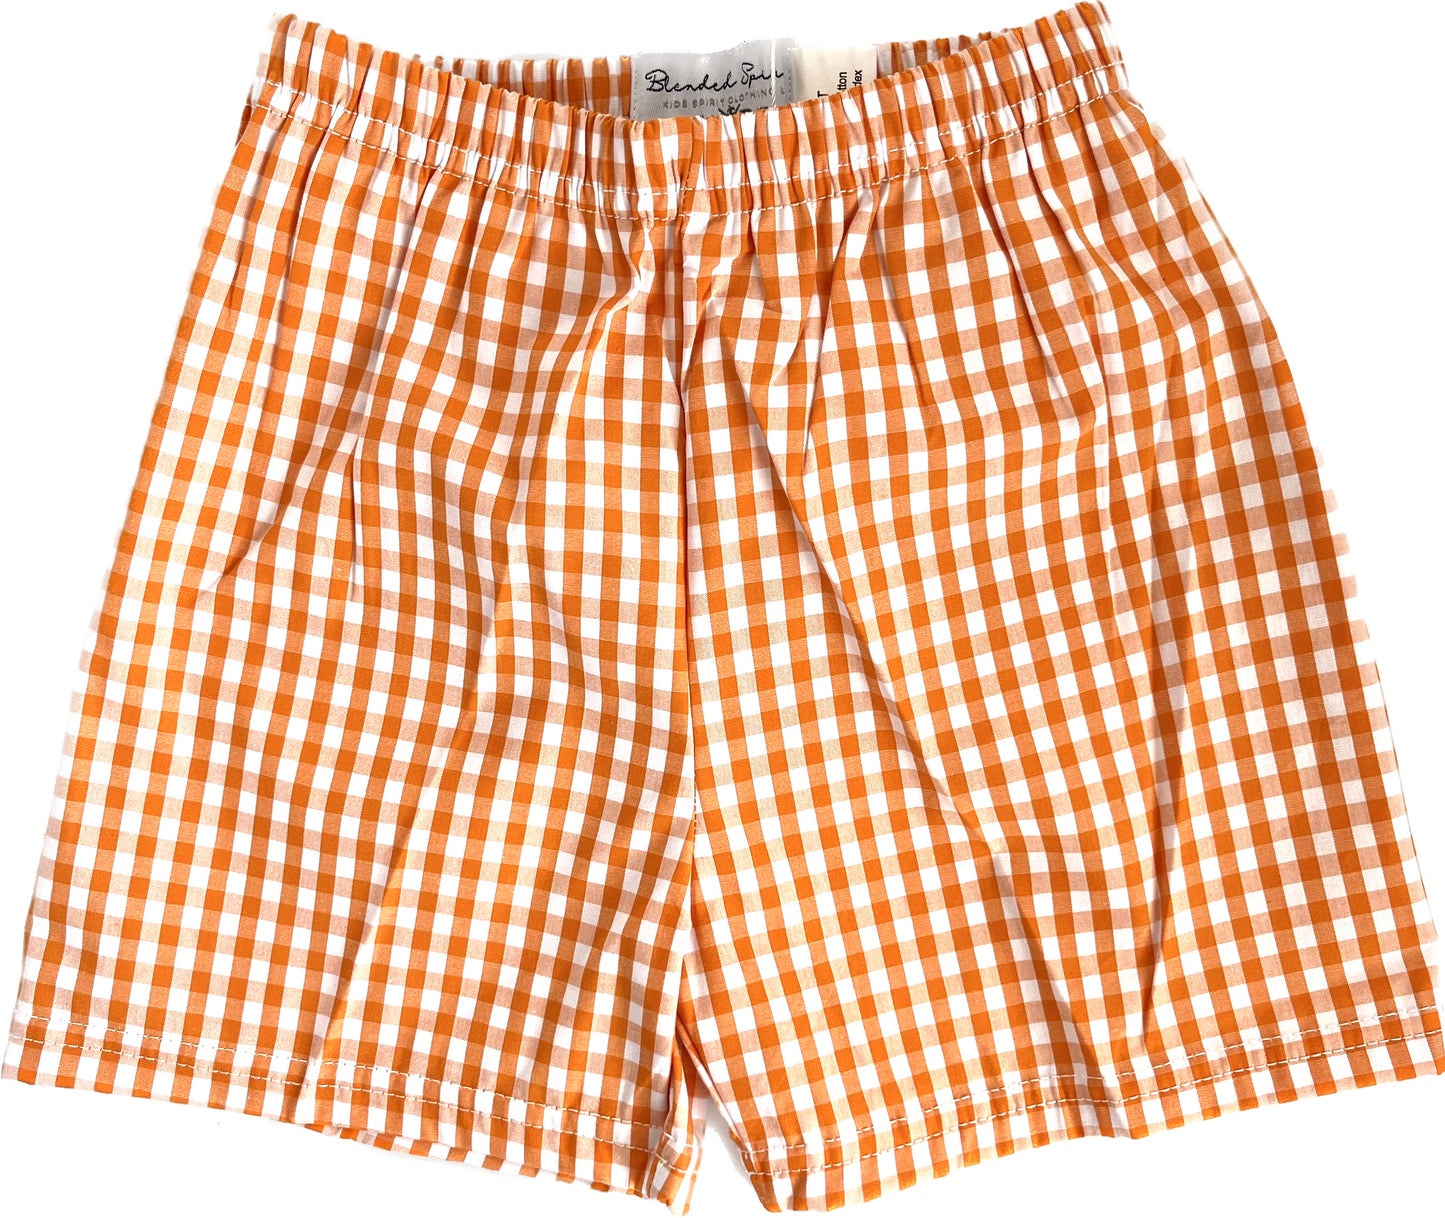 Orange Gingham Shorts